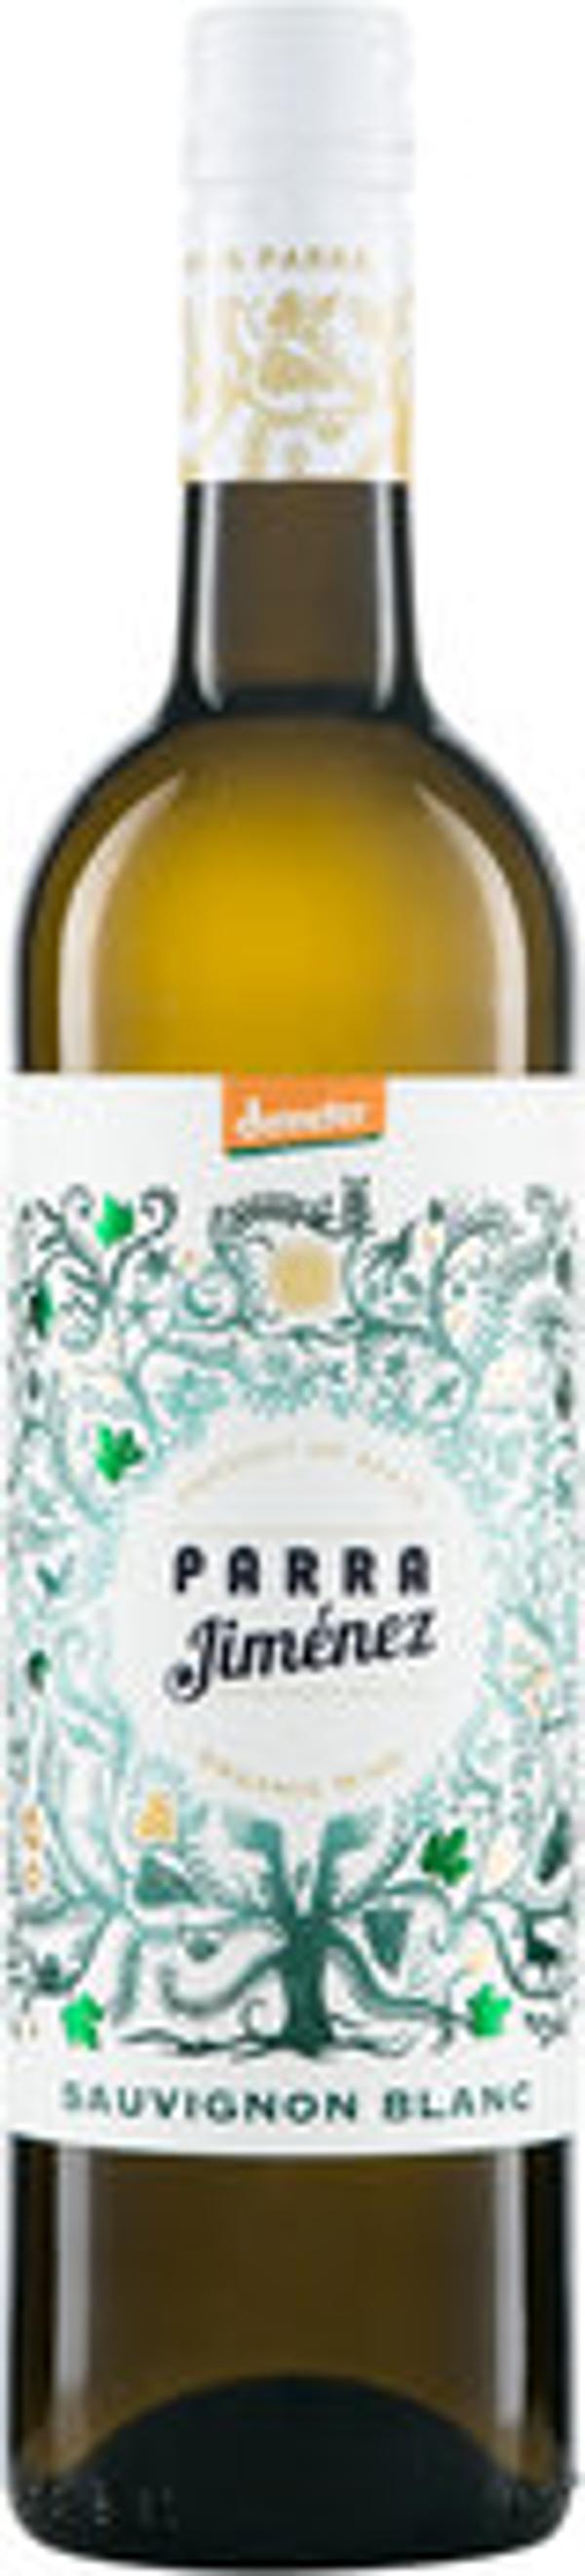 Produktfoto zu Sauvignon Blanc 'Parra' Demeter DO, Weißwein trocken 0,75l